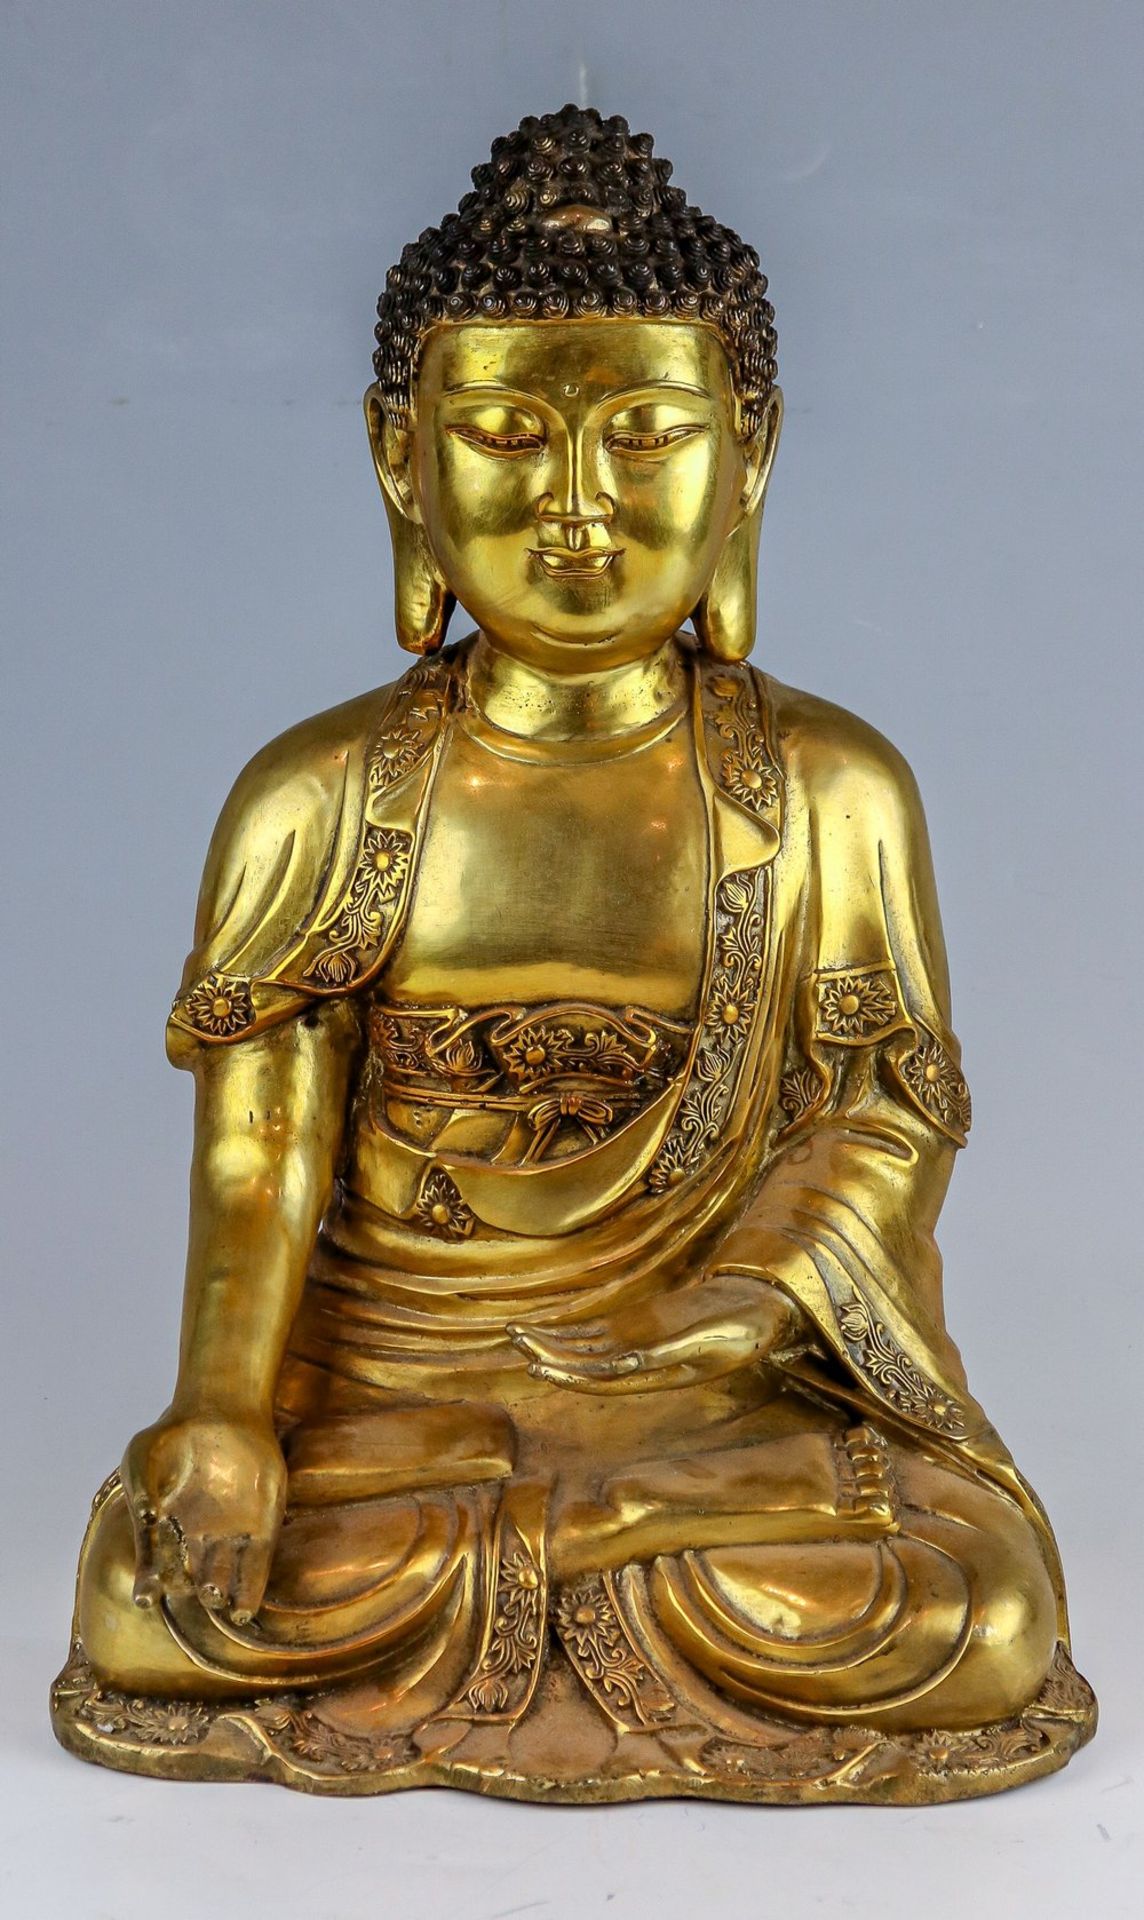 Sitzender Buddha China